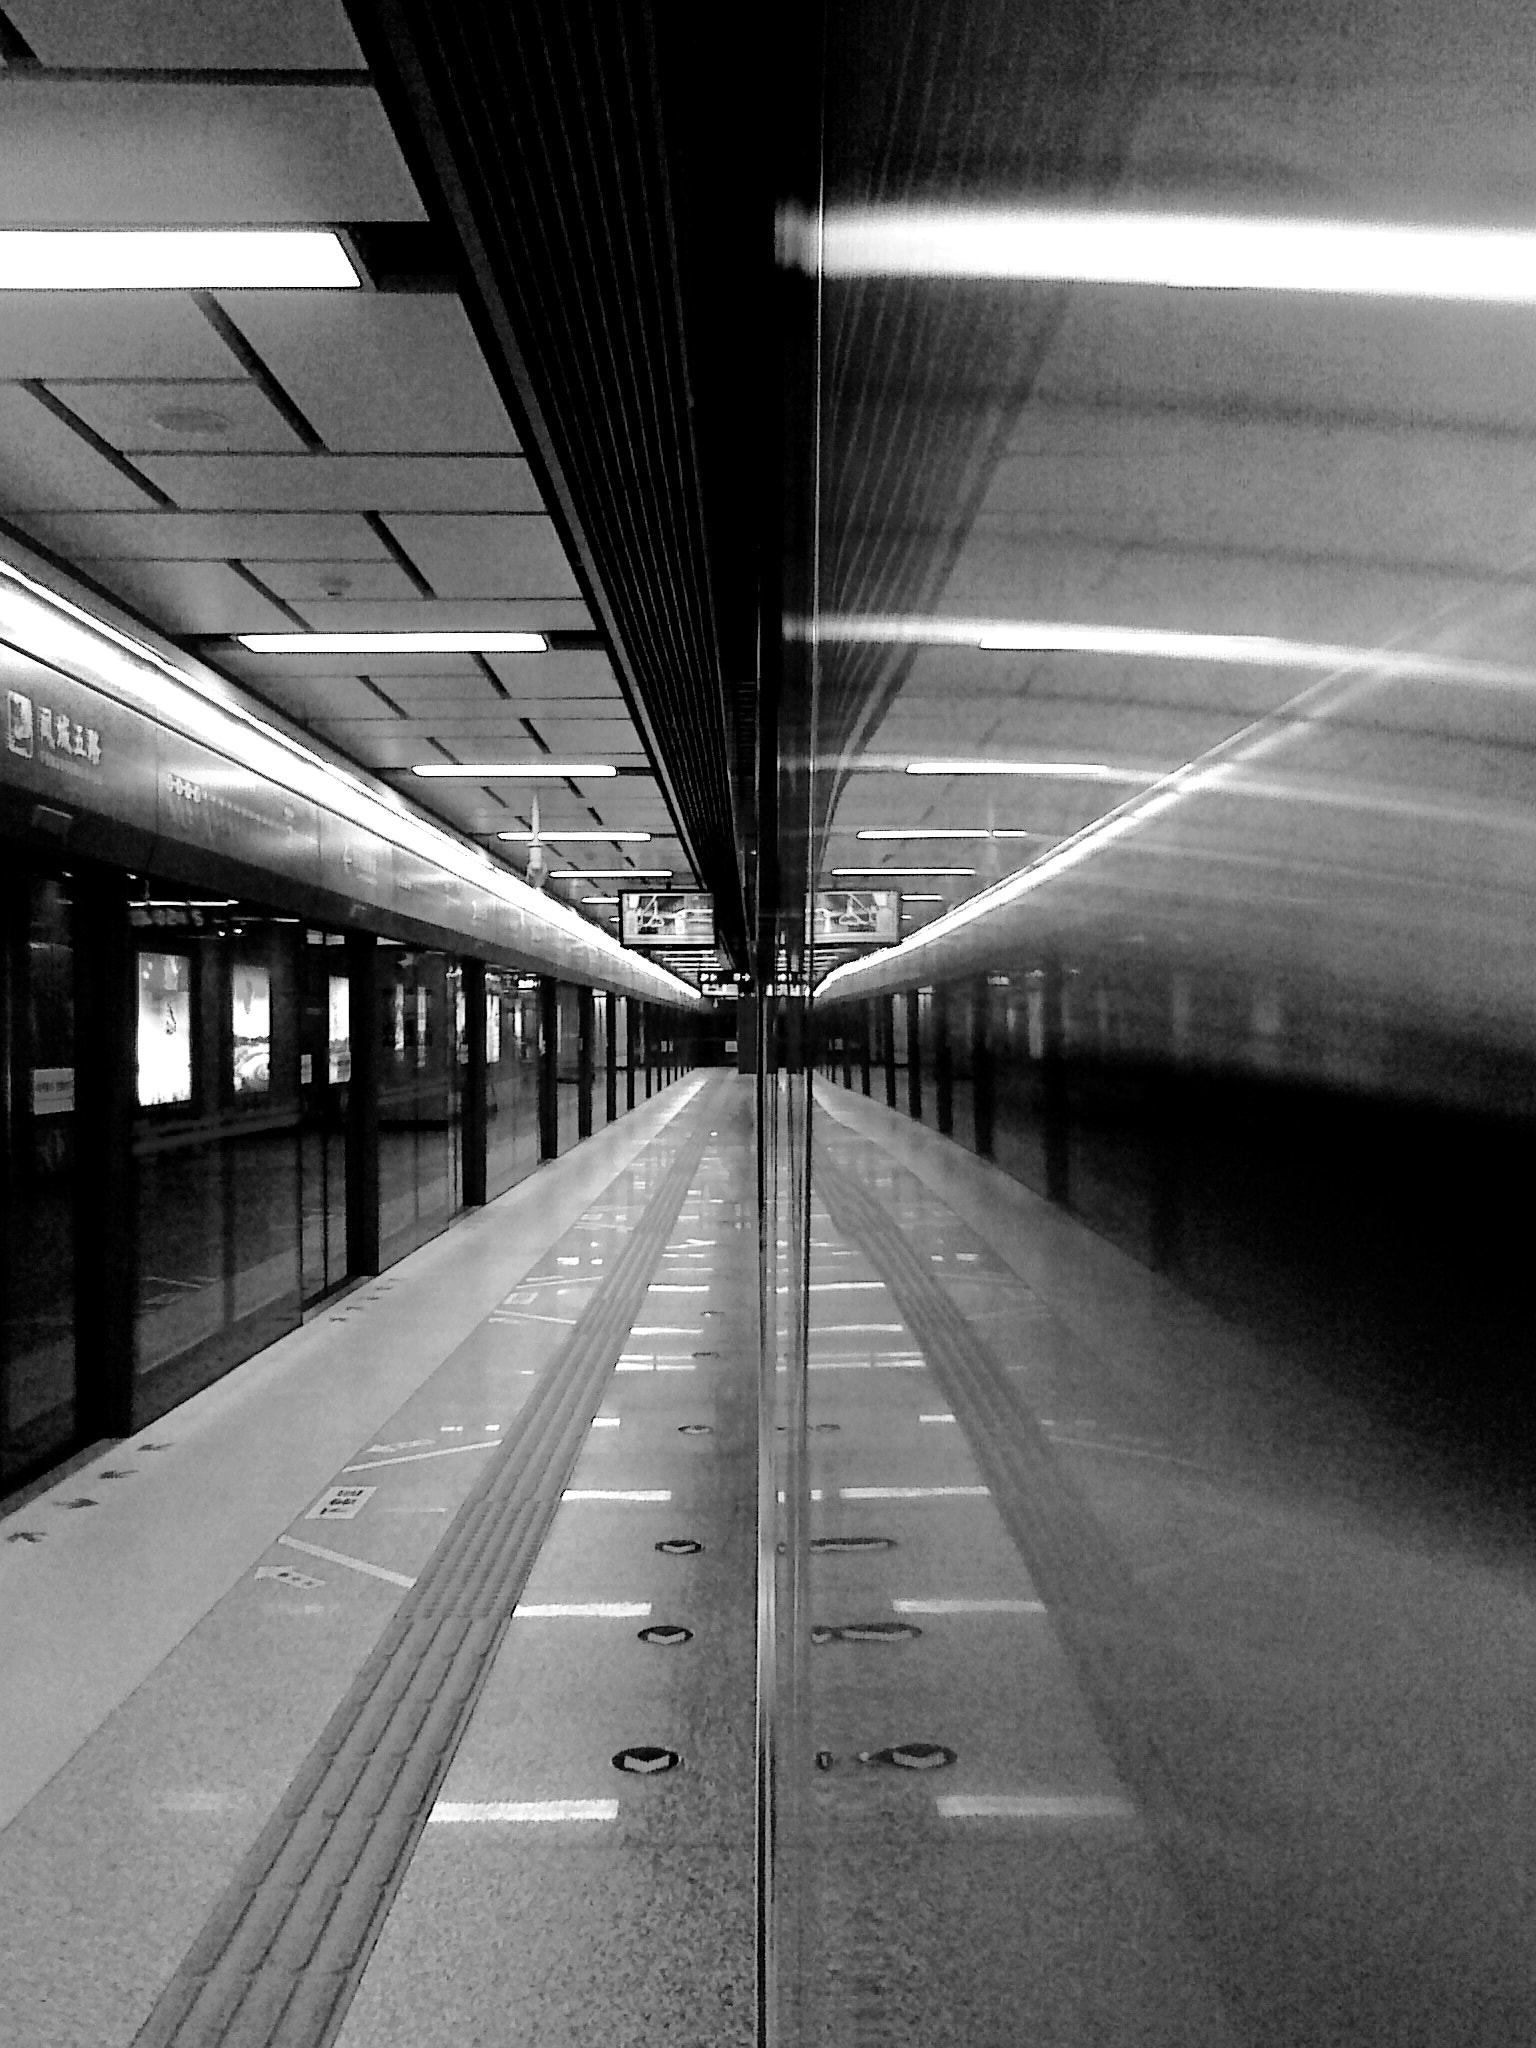 Nokia C5-00 sample photo. Subway photography